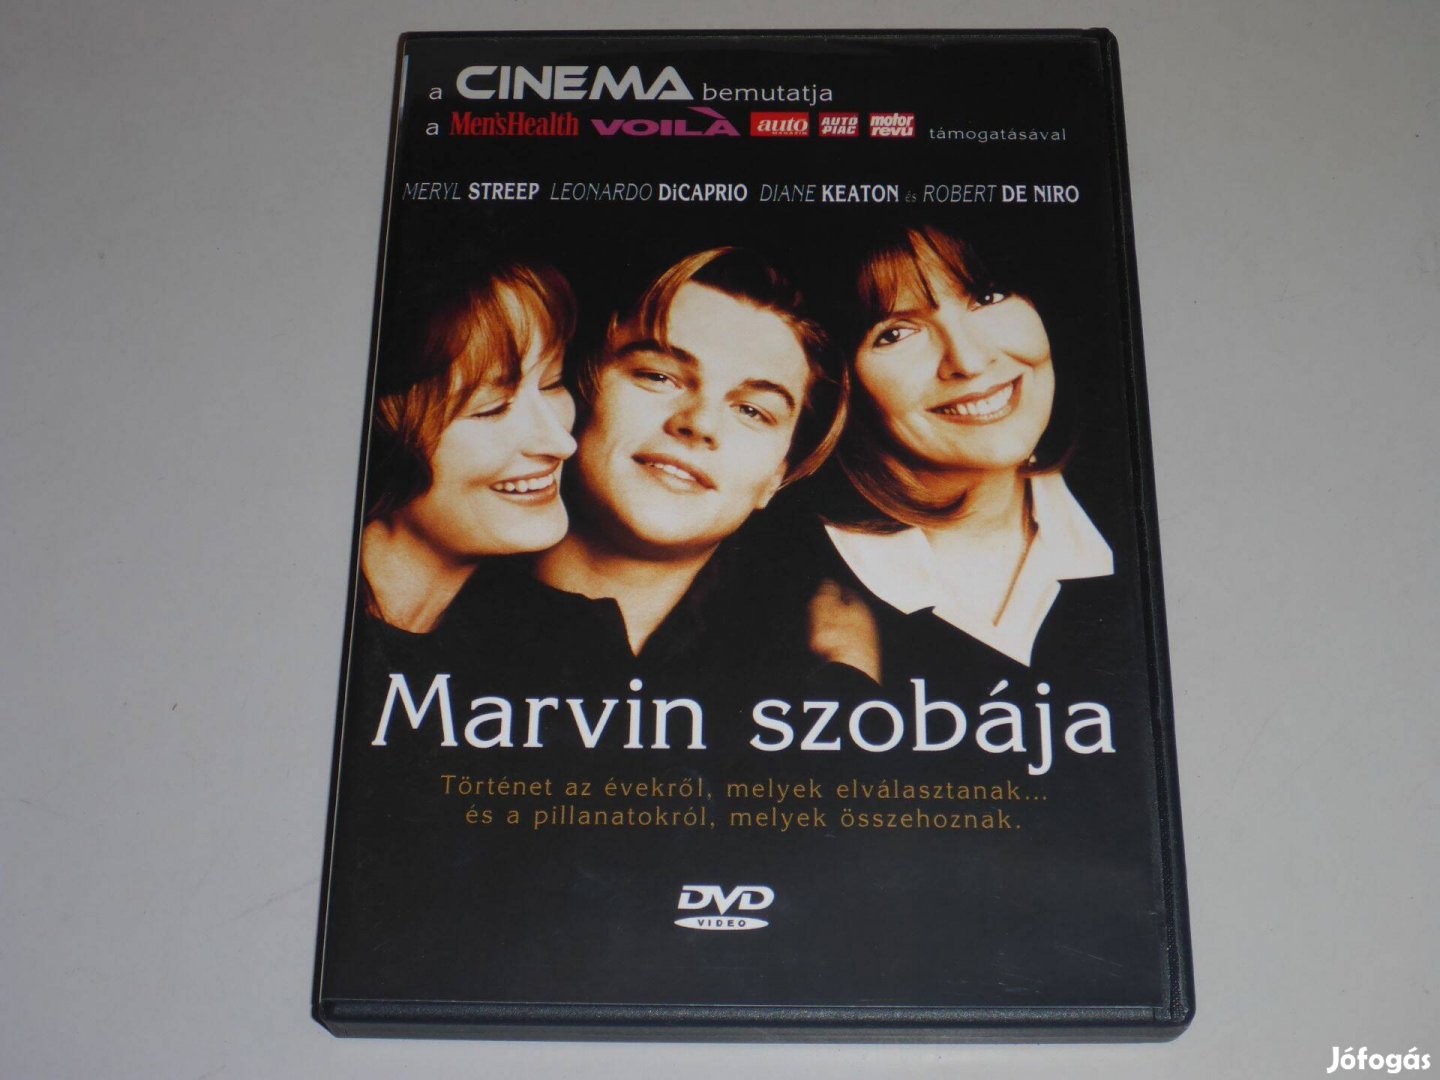 Marvin szobája DVD film /